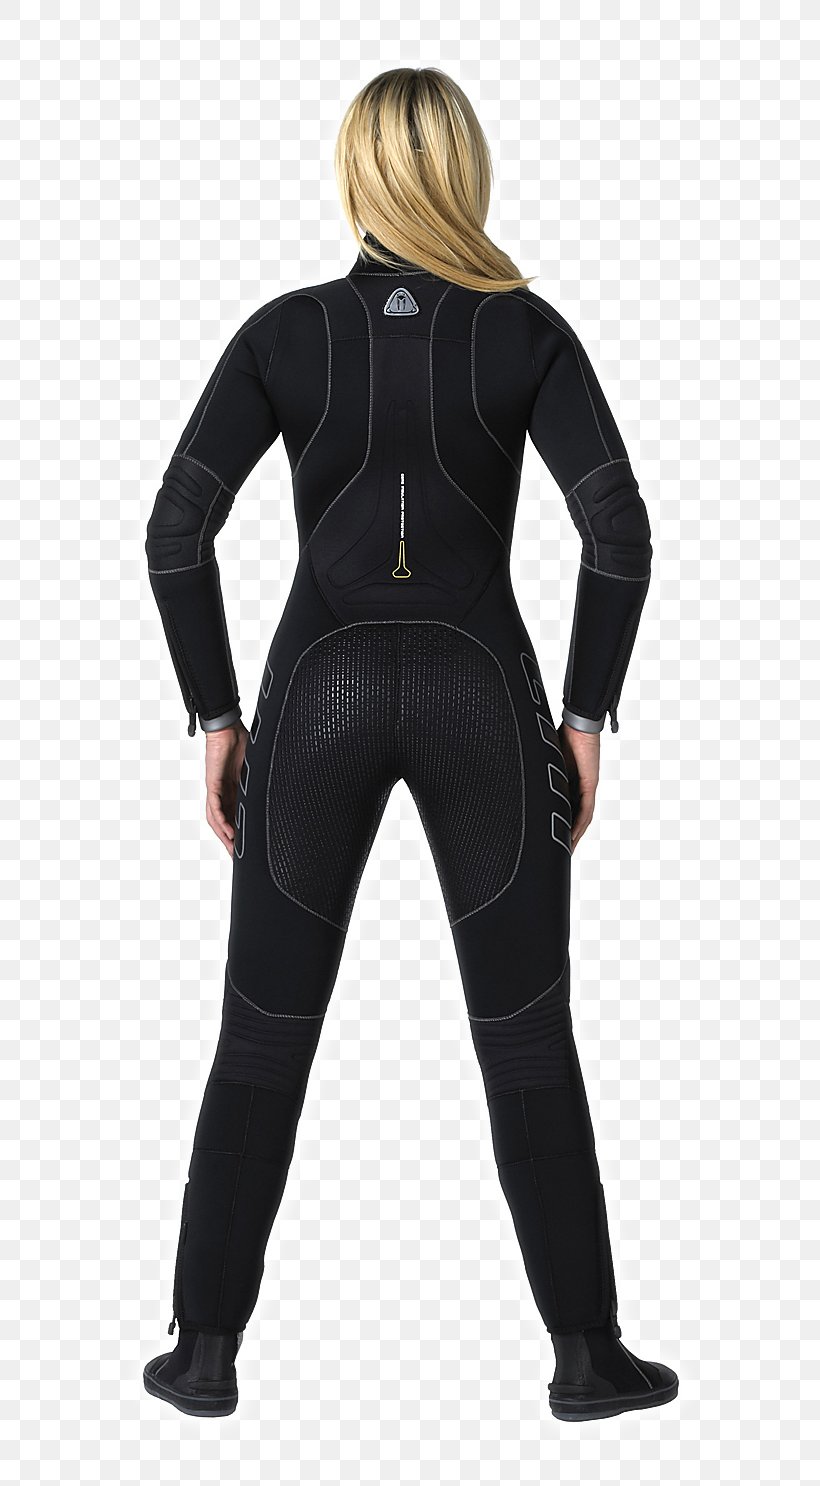 Wetsuit Diving Suit Scuba Diving Underwater Diving Zipper, PNG, 693x1486px, Wetsuit, Black, Costume, Diving Suit, Dry Suit Download Free